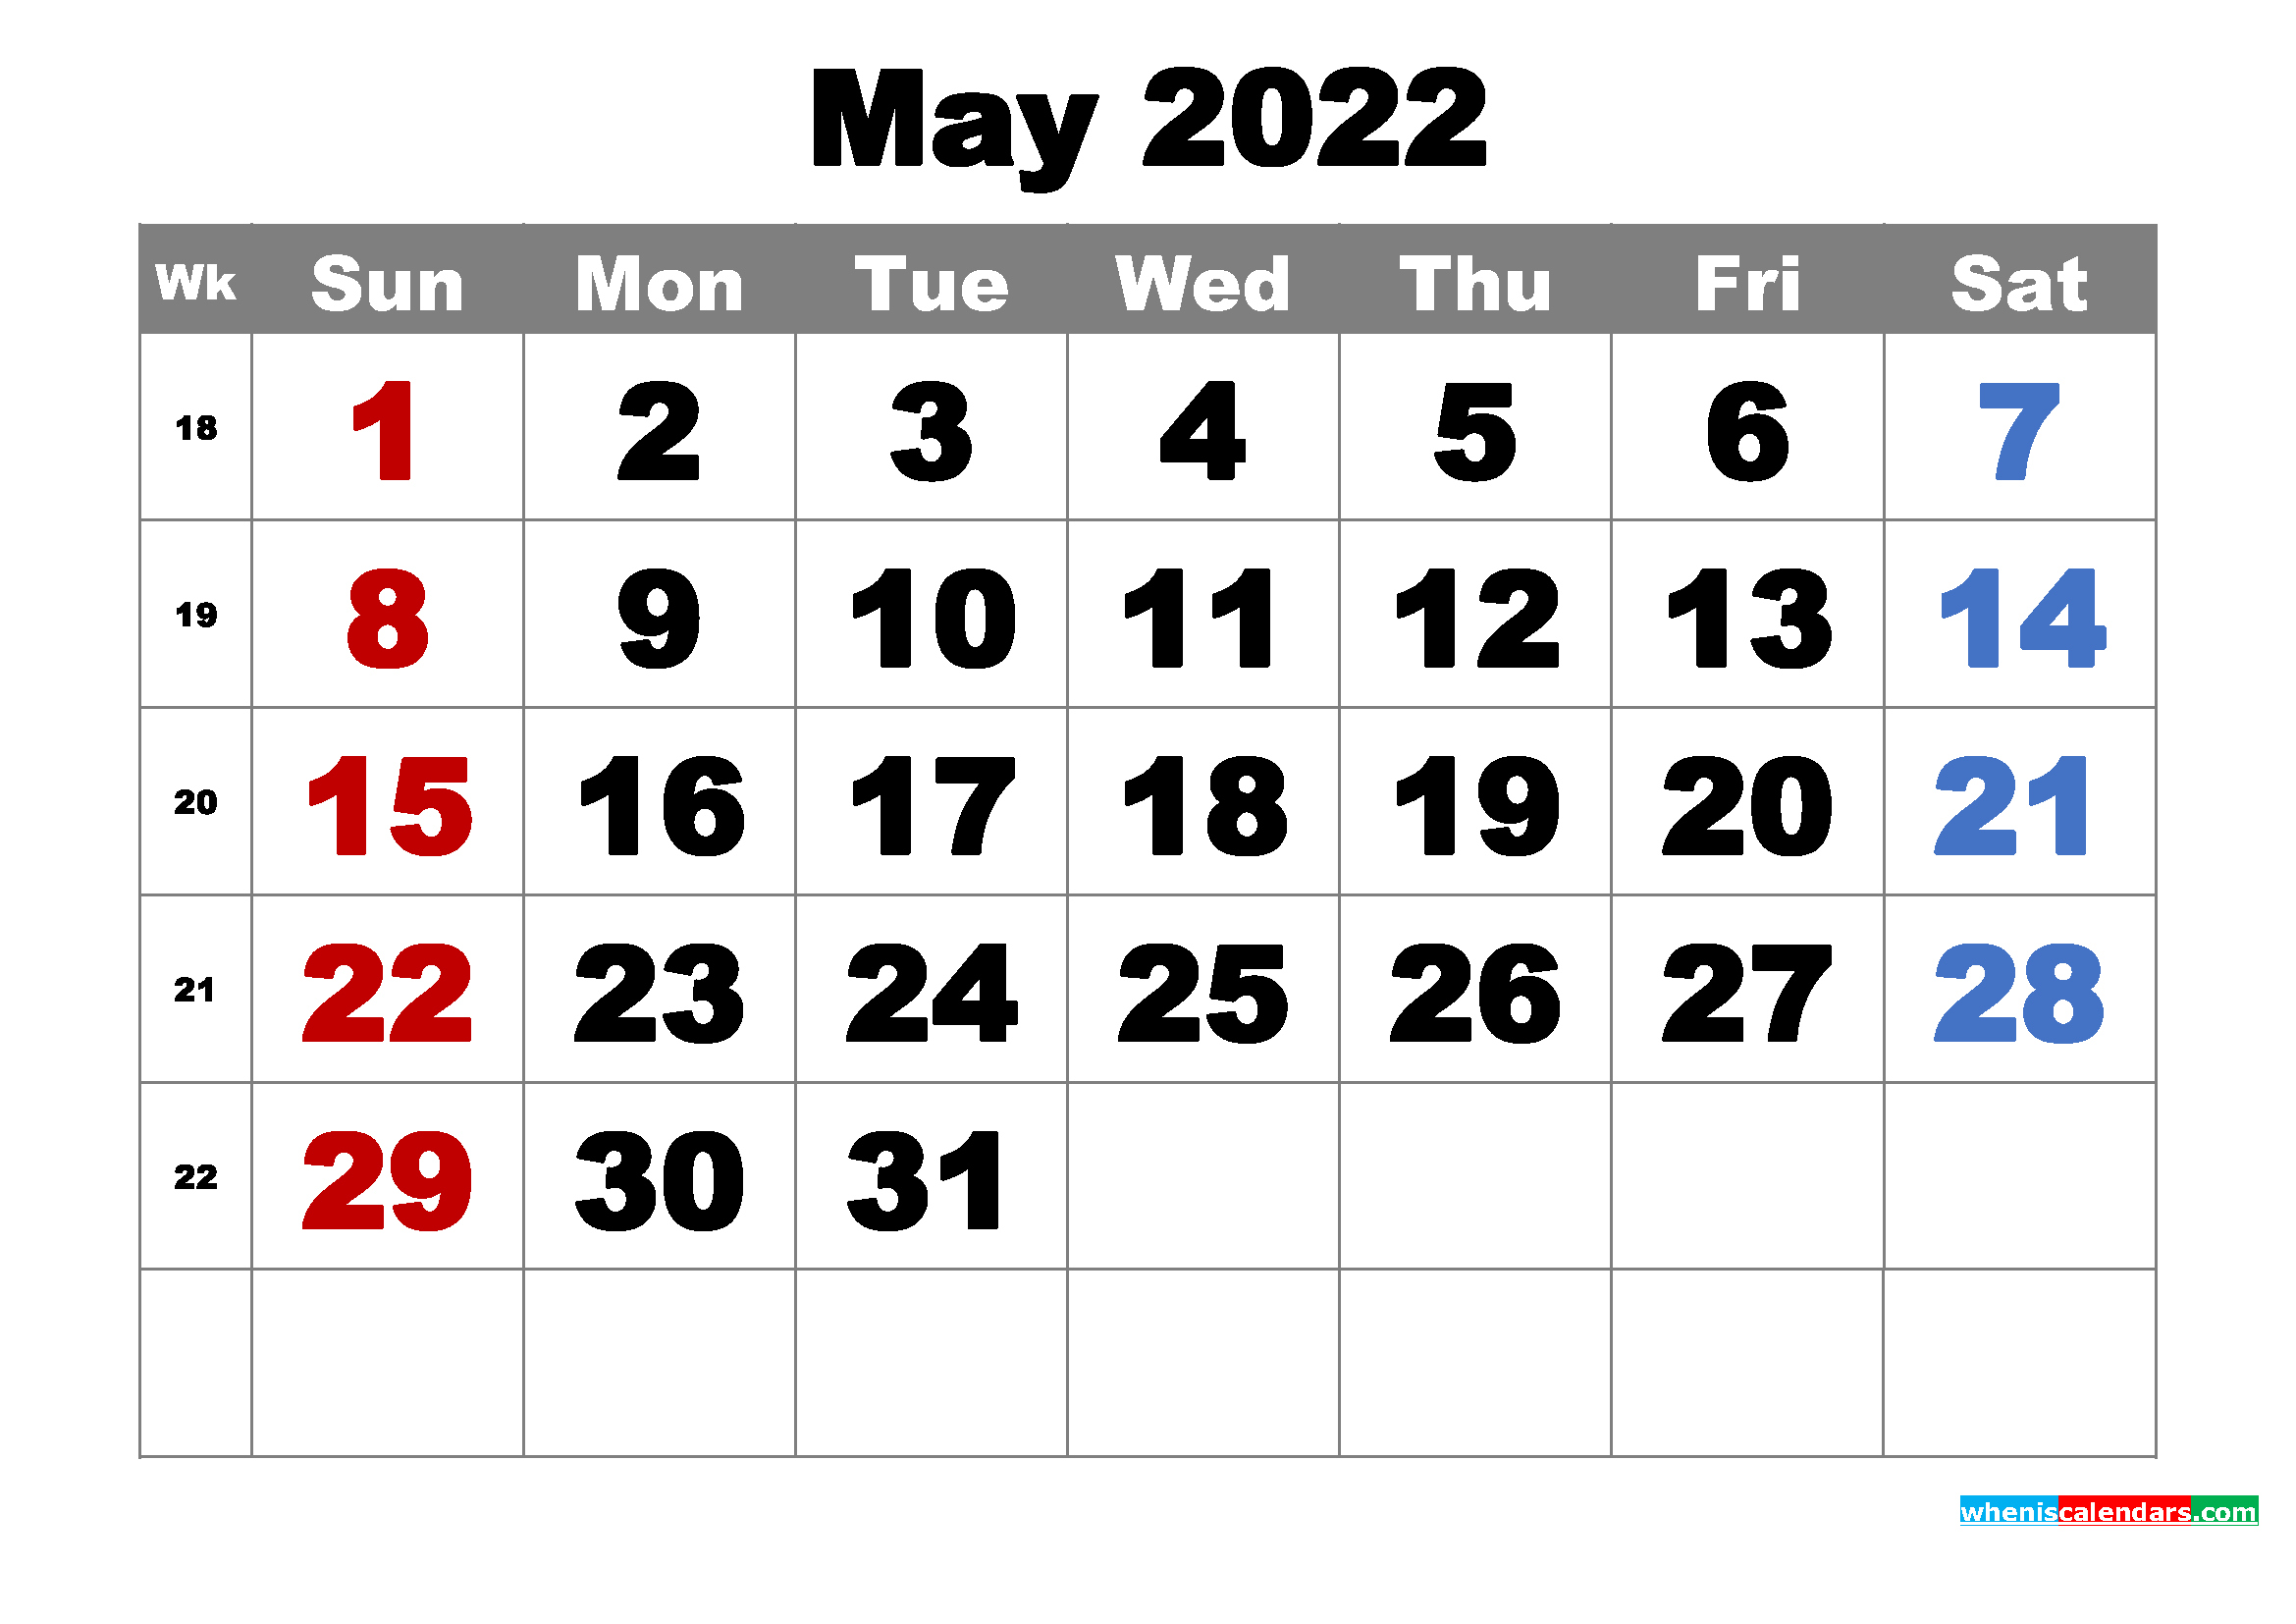 Get Tamil Calendar 2022 May Month